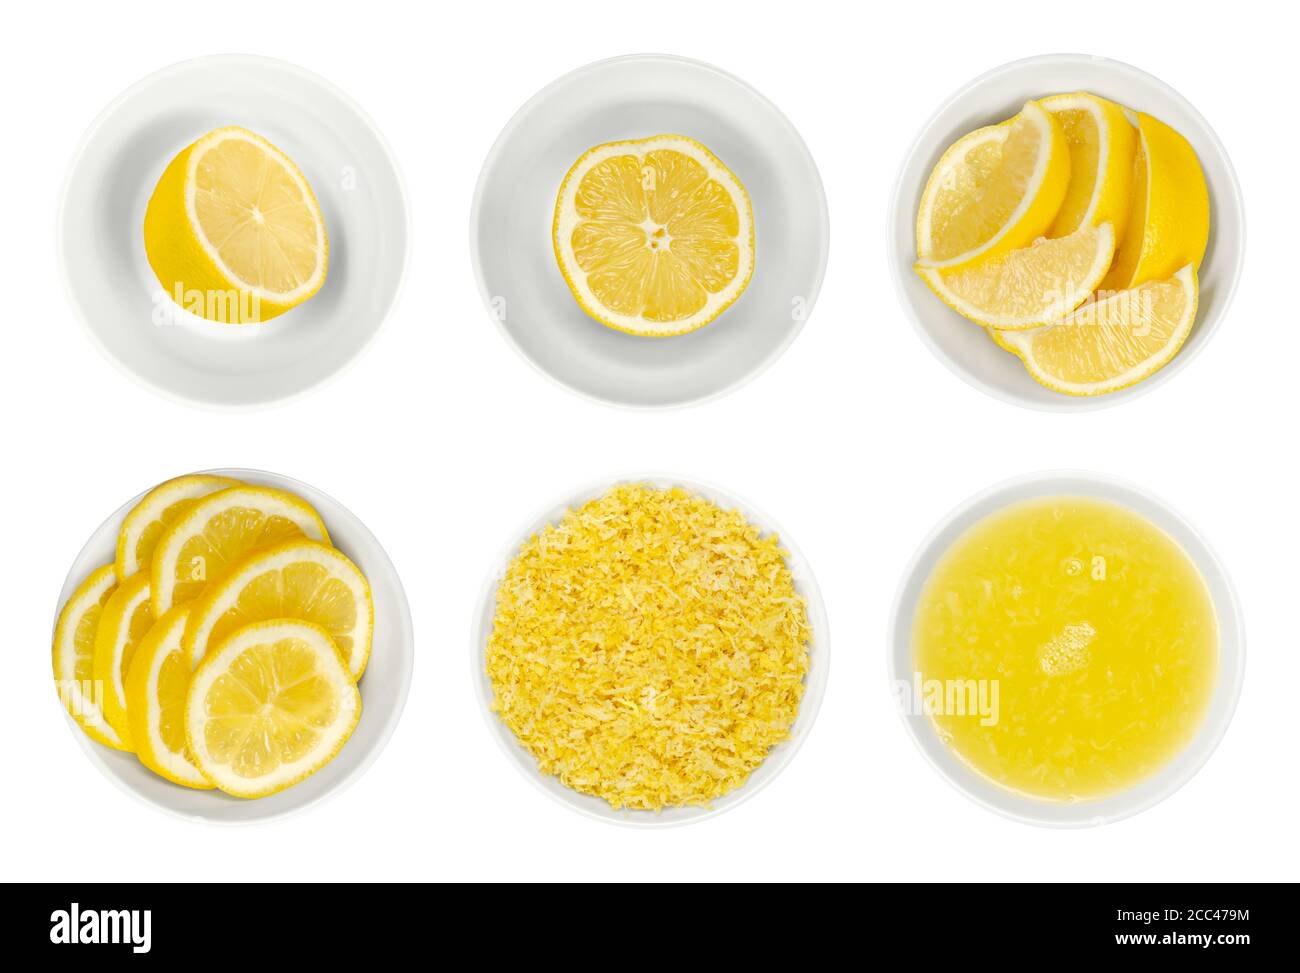 Limoni freschi, tagliati a metà, fette e spicchi, scorza di limone e succo in ciotole di vetro bianco. Agrumi maturi e gialli, utilizzati per la cucina e la pulizia Foto Stock